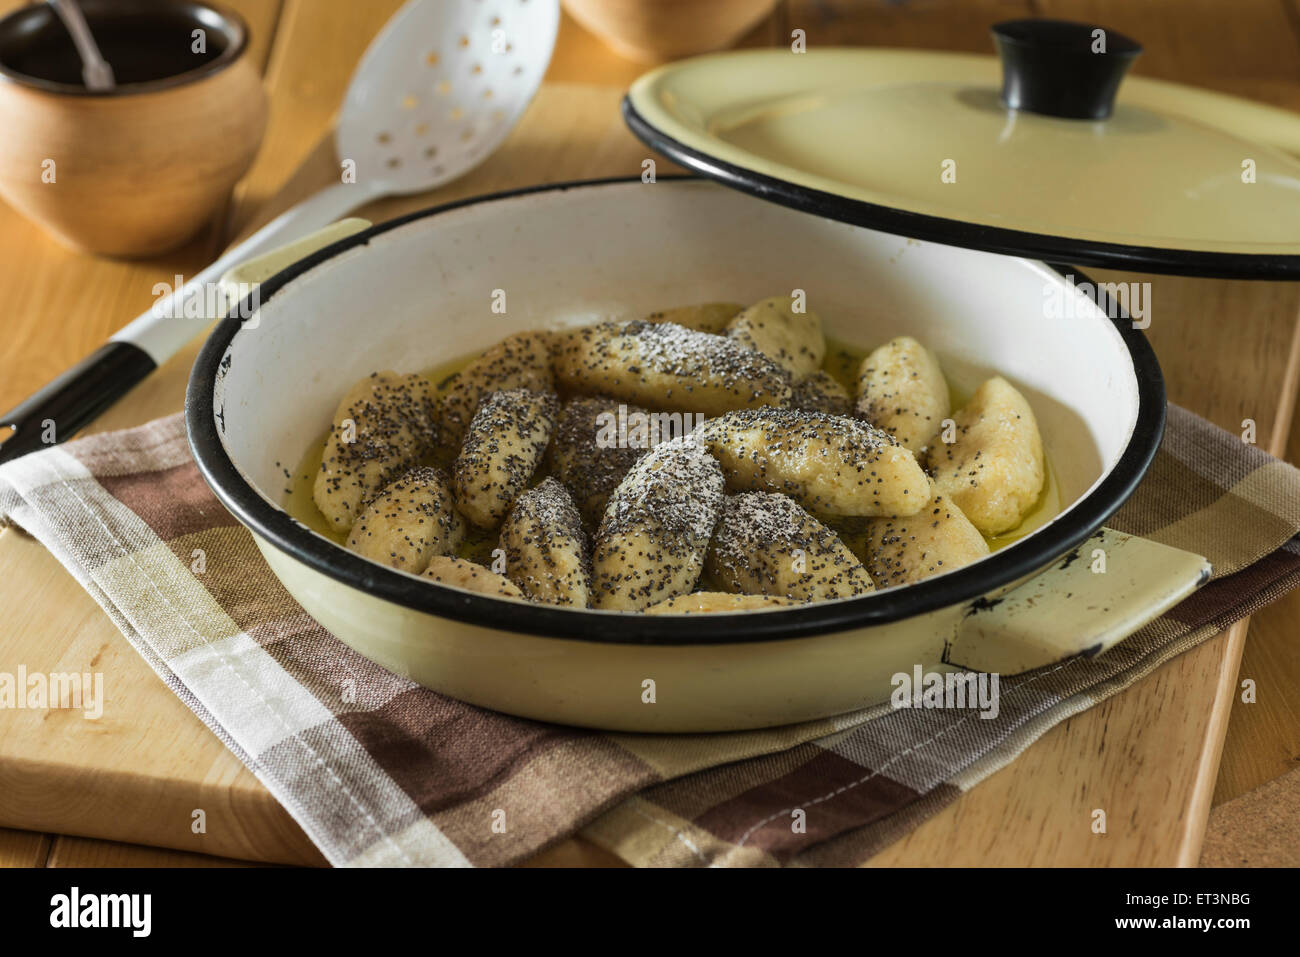 Skubánky. Boulettes de pommes de terre aux graines de pavot. L'alimentation de l'Europe centrale Banque D'Images